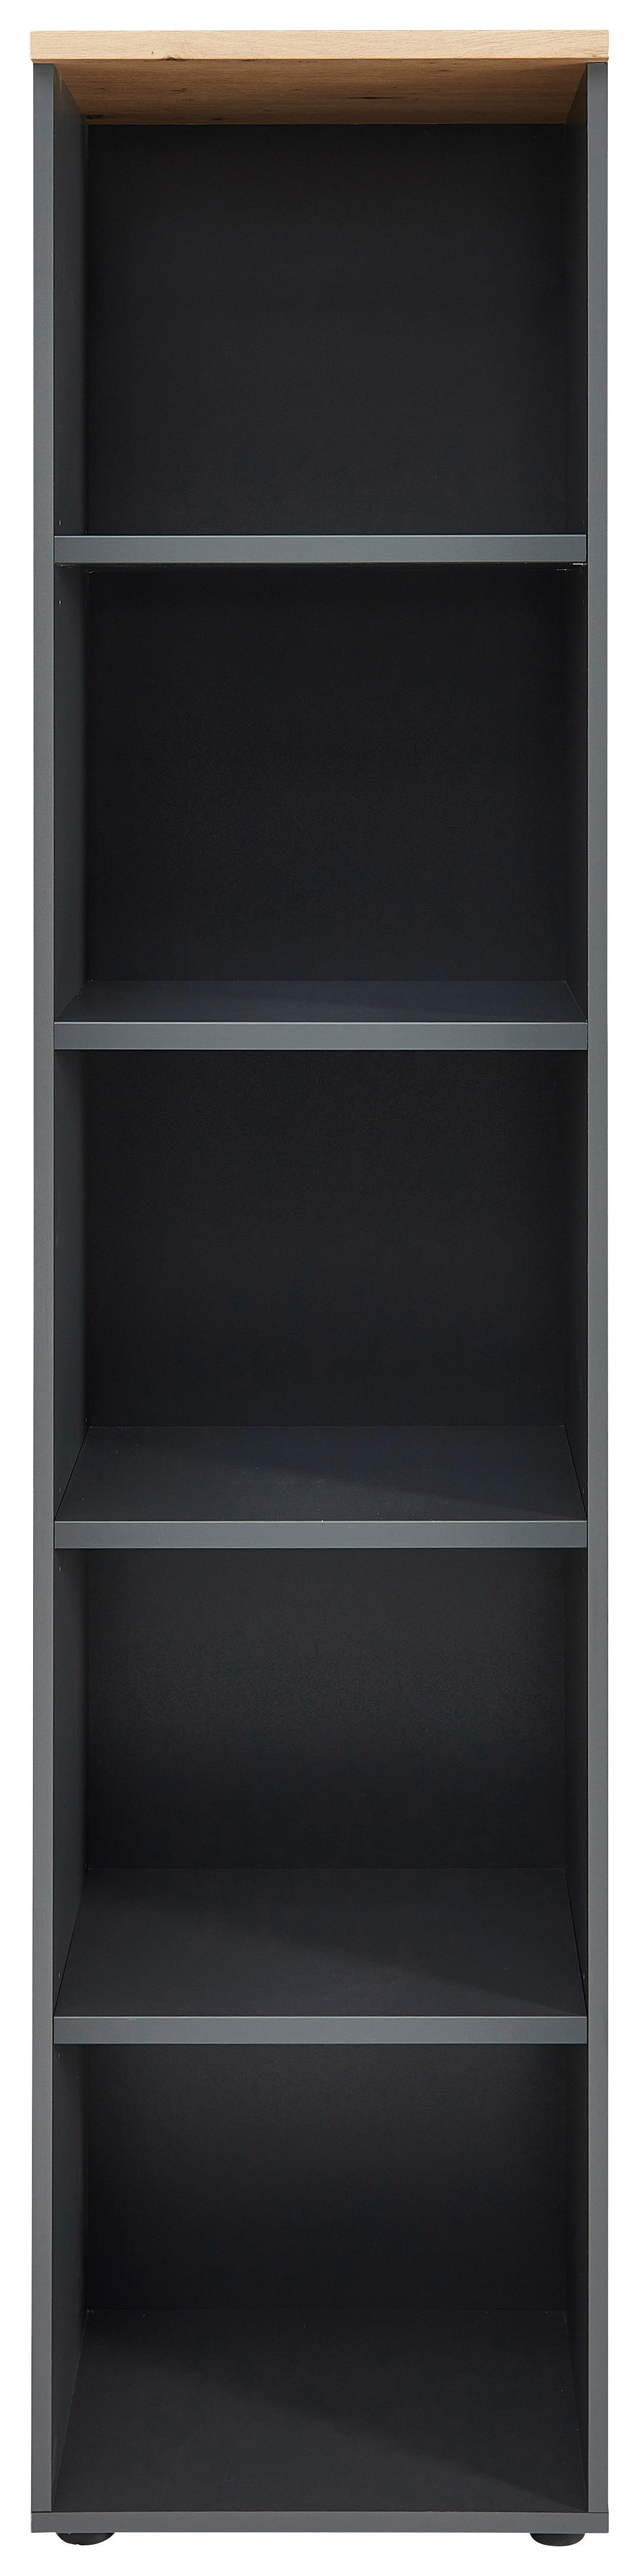 PISARNIŠKI REGAL 45/197/38 cm hrast artisan, barve grafita  - črna/barve grafita, Moderno, umetna masa/leseni material (45/197/38cm) - Voleo